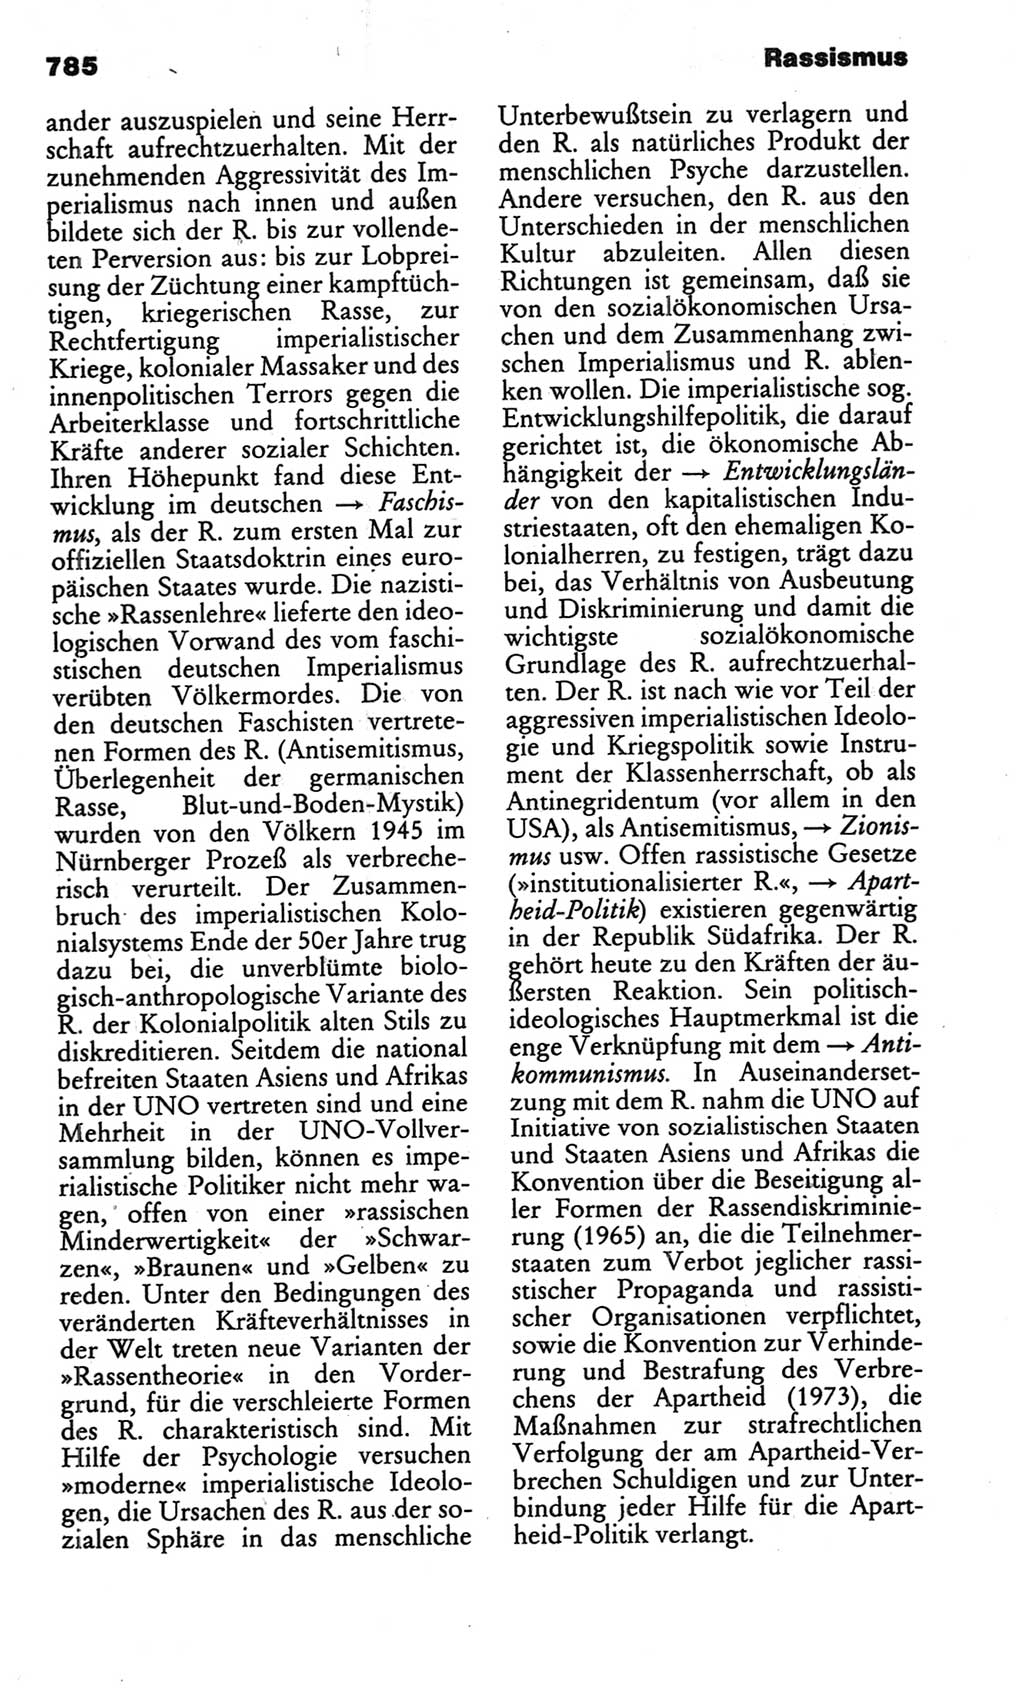 Kleines politisches Wörterbuch [Deutsche Demokratische Republik (DDR)] 1986, Seite 785 (Kl. pol. Wb. DDR 1986, S. 785)